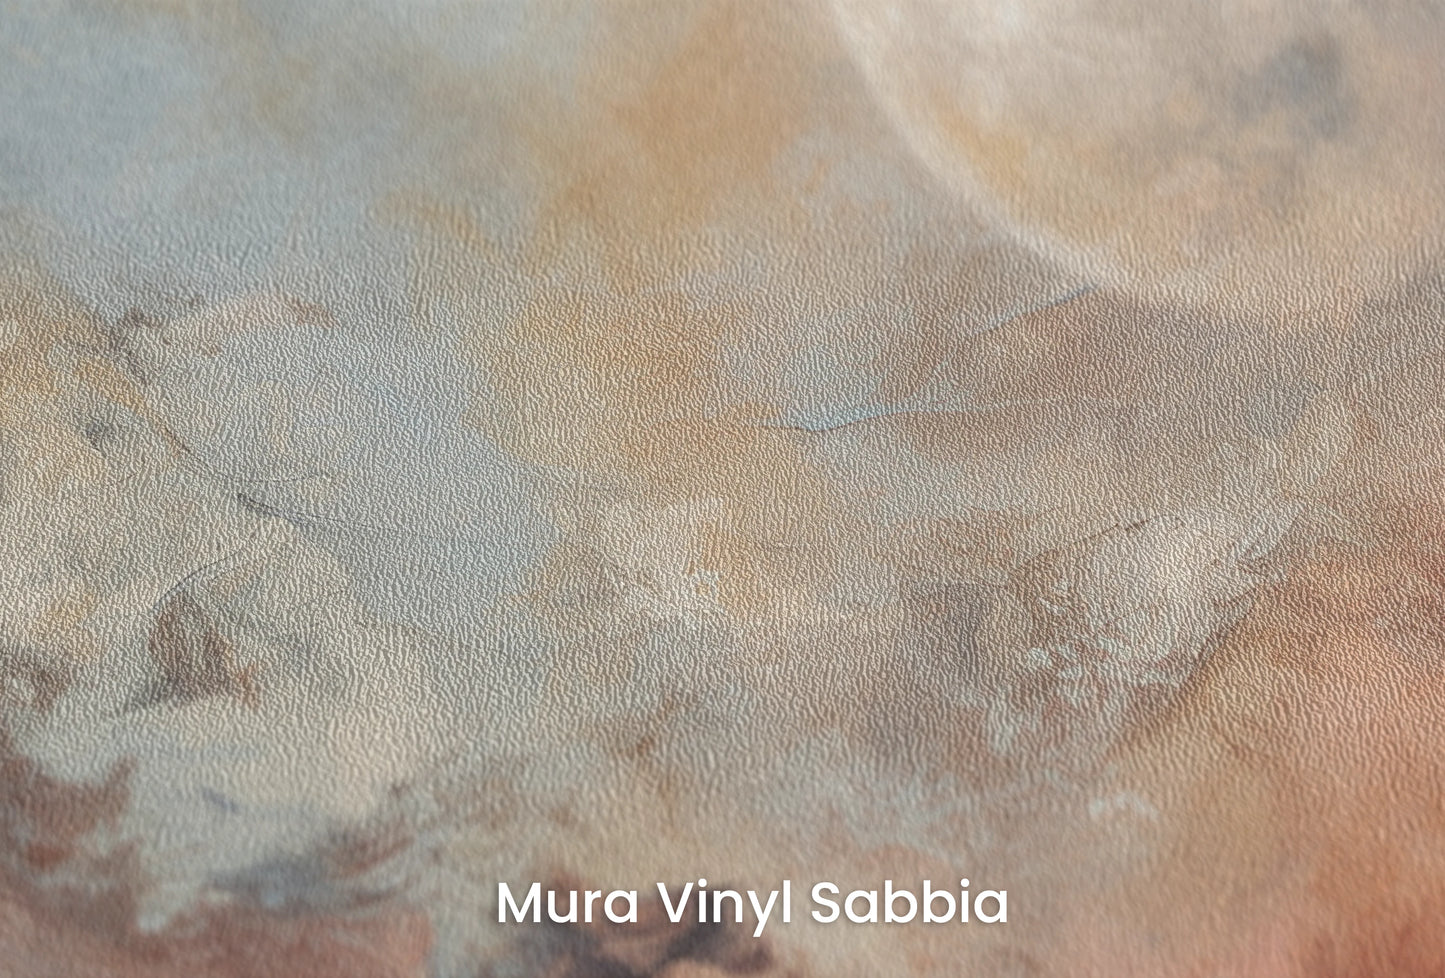 Zbliżenie na artystyczną fototapetę o nazwie Moon's Monochrome na podłożu Mura Vinyl Sabbia struktura grubego ziarna piasku.